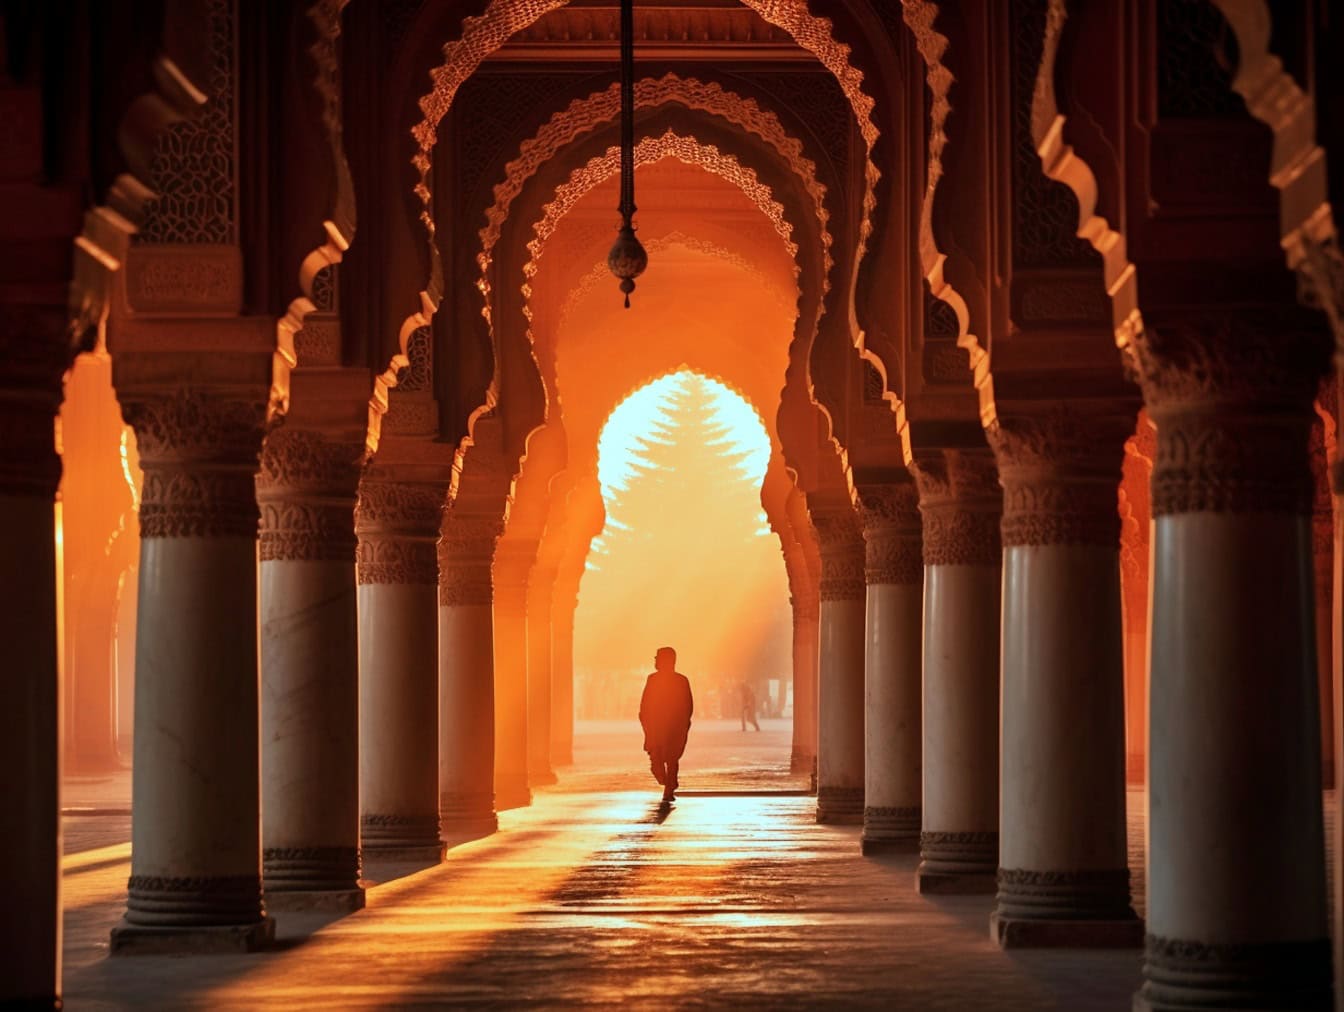 Закат с силуэтом человека, идущего через богато украшенную арку красивой исламской мечети с традиционной арабской архитектурой